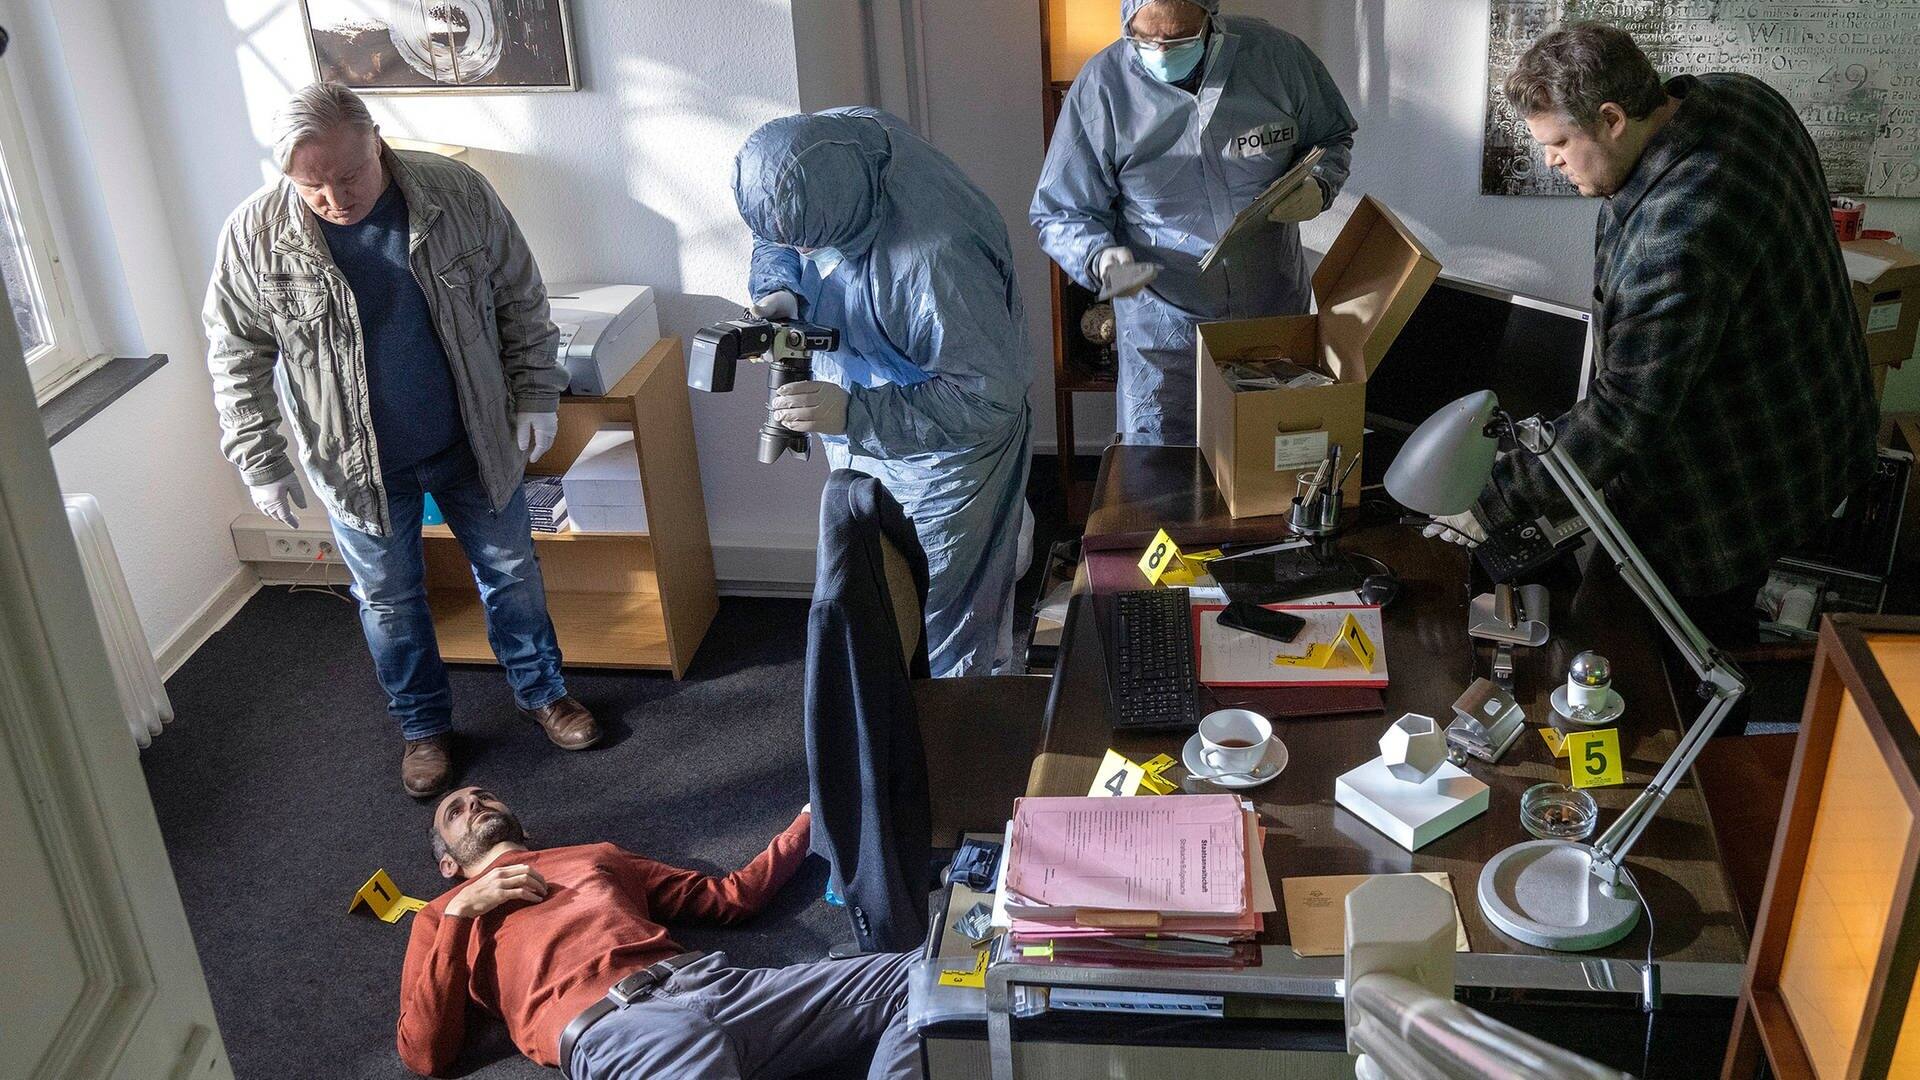 Draufsicht: Ein Toter liegt am Boden eines Büros, Kommissar Thiel steht vor ihm, weitere Polizeibeamte sind im Raum. (Foto: ard-foto s2-intern/extern, WDR/Thomas Kost)